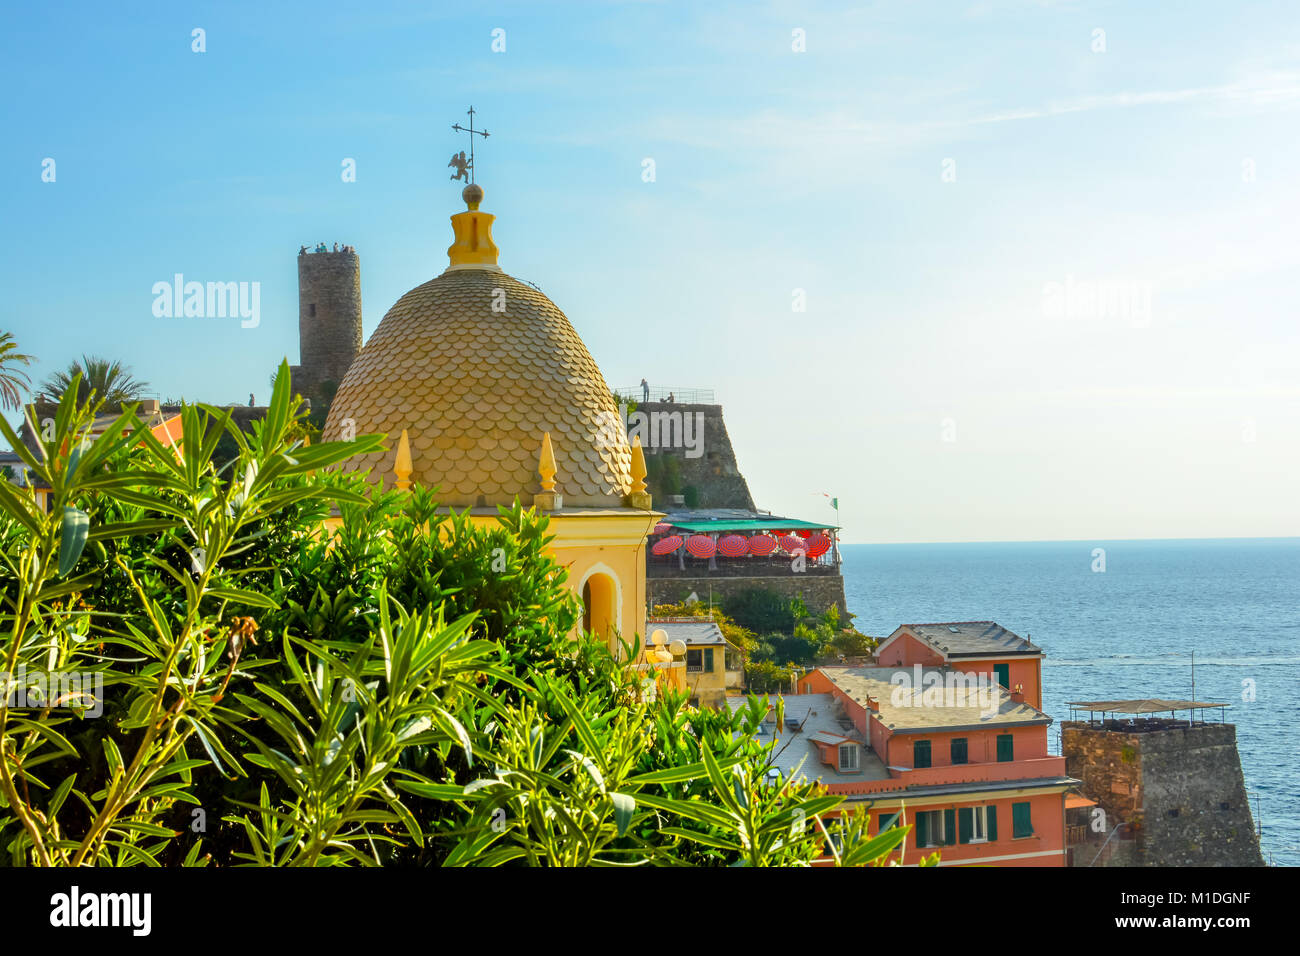 Il turista a godere di una bellissima vista del mare ligure presso il villaggio di Vernazza Italia, parte delle Cinque Terre, con la Chiesa di Santa Margherita chiesa duomo Foto Stock